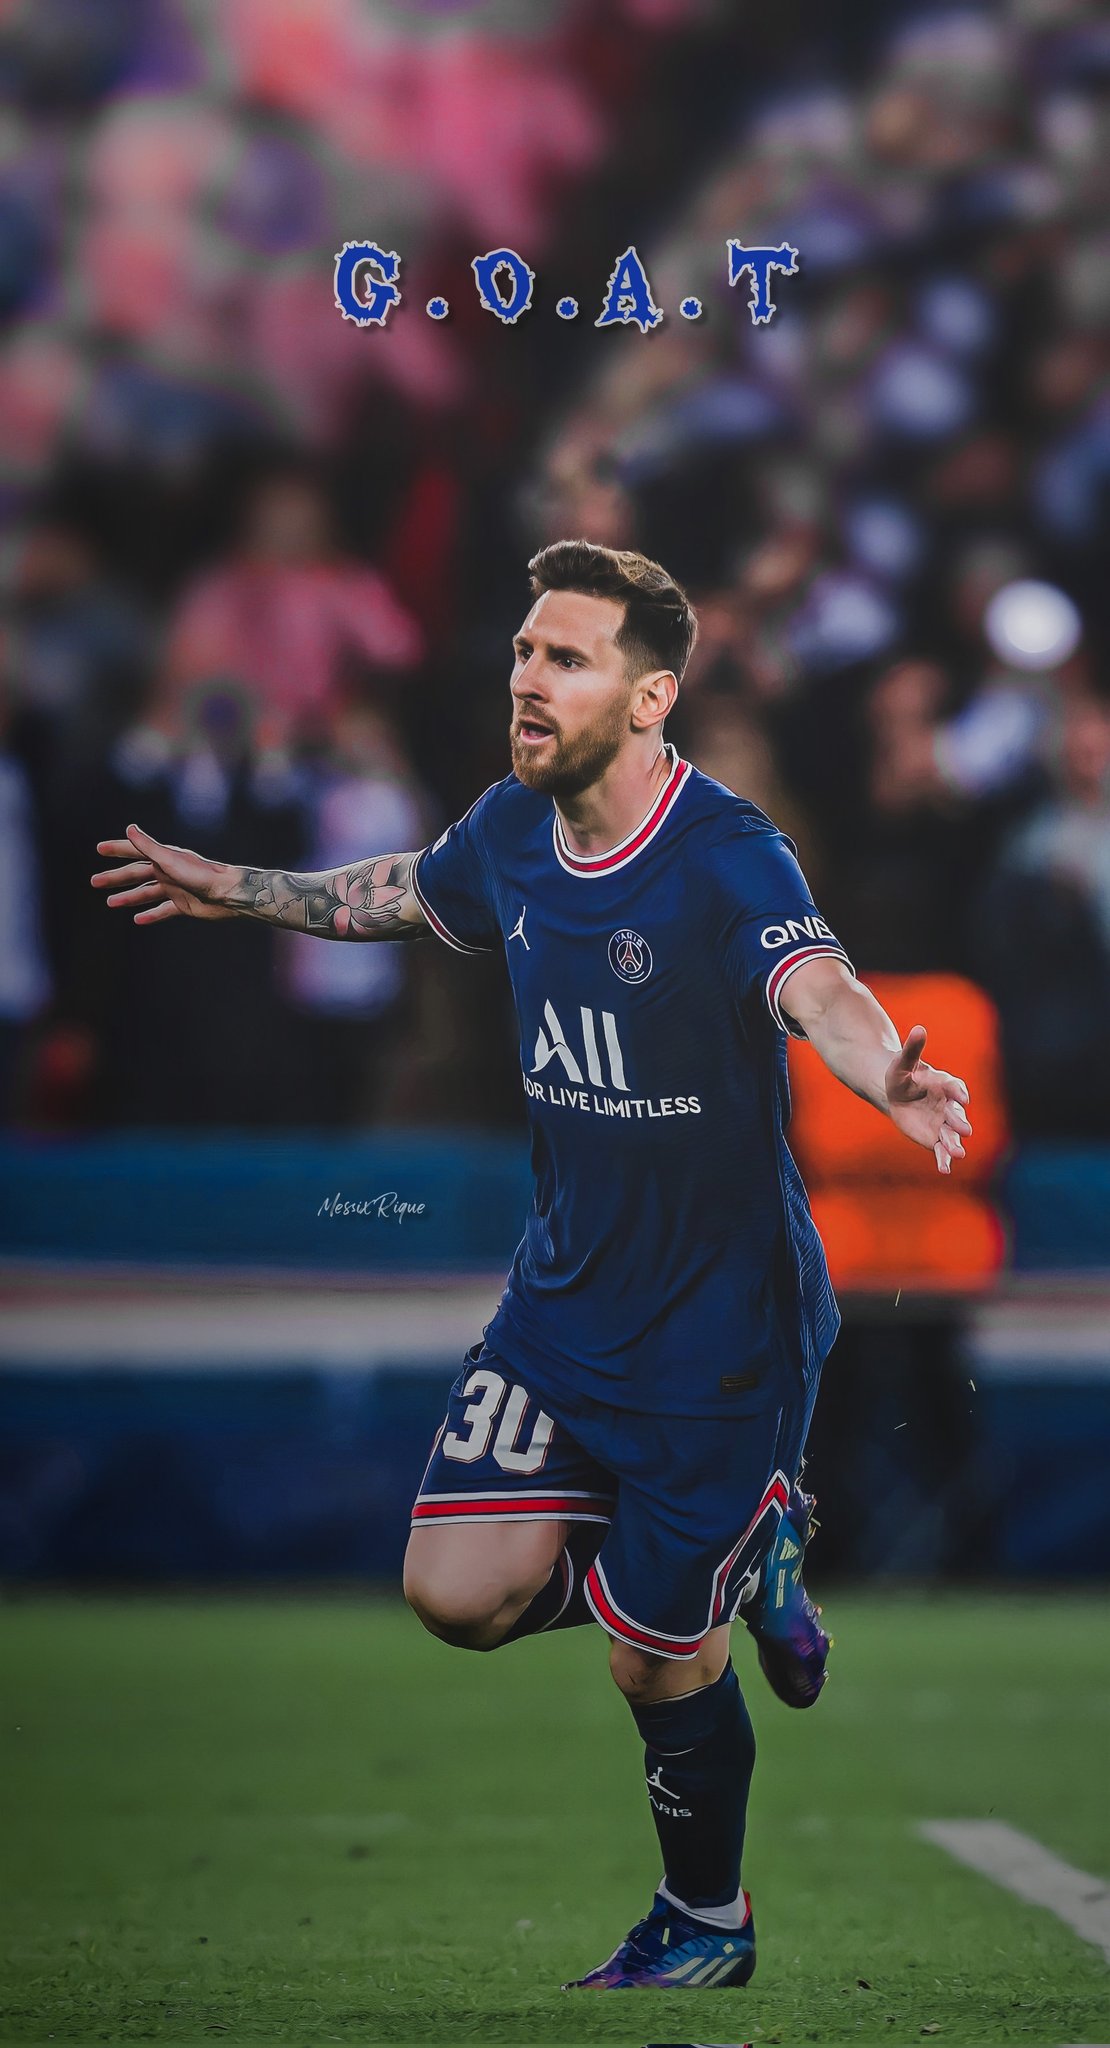 Khi nhắc đến Messi, ai cũng biết đến huyền thoại bóng đá người Argentine. Hãy cùng đắm chìm trong những pha bóng đẹp như tranh vẽ của anh và cảm nhận sự khéo léo đến từ tuyệt phẩm mà Messi thể hiện.